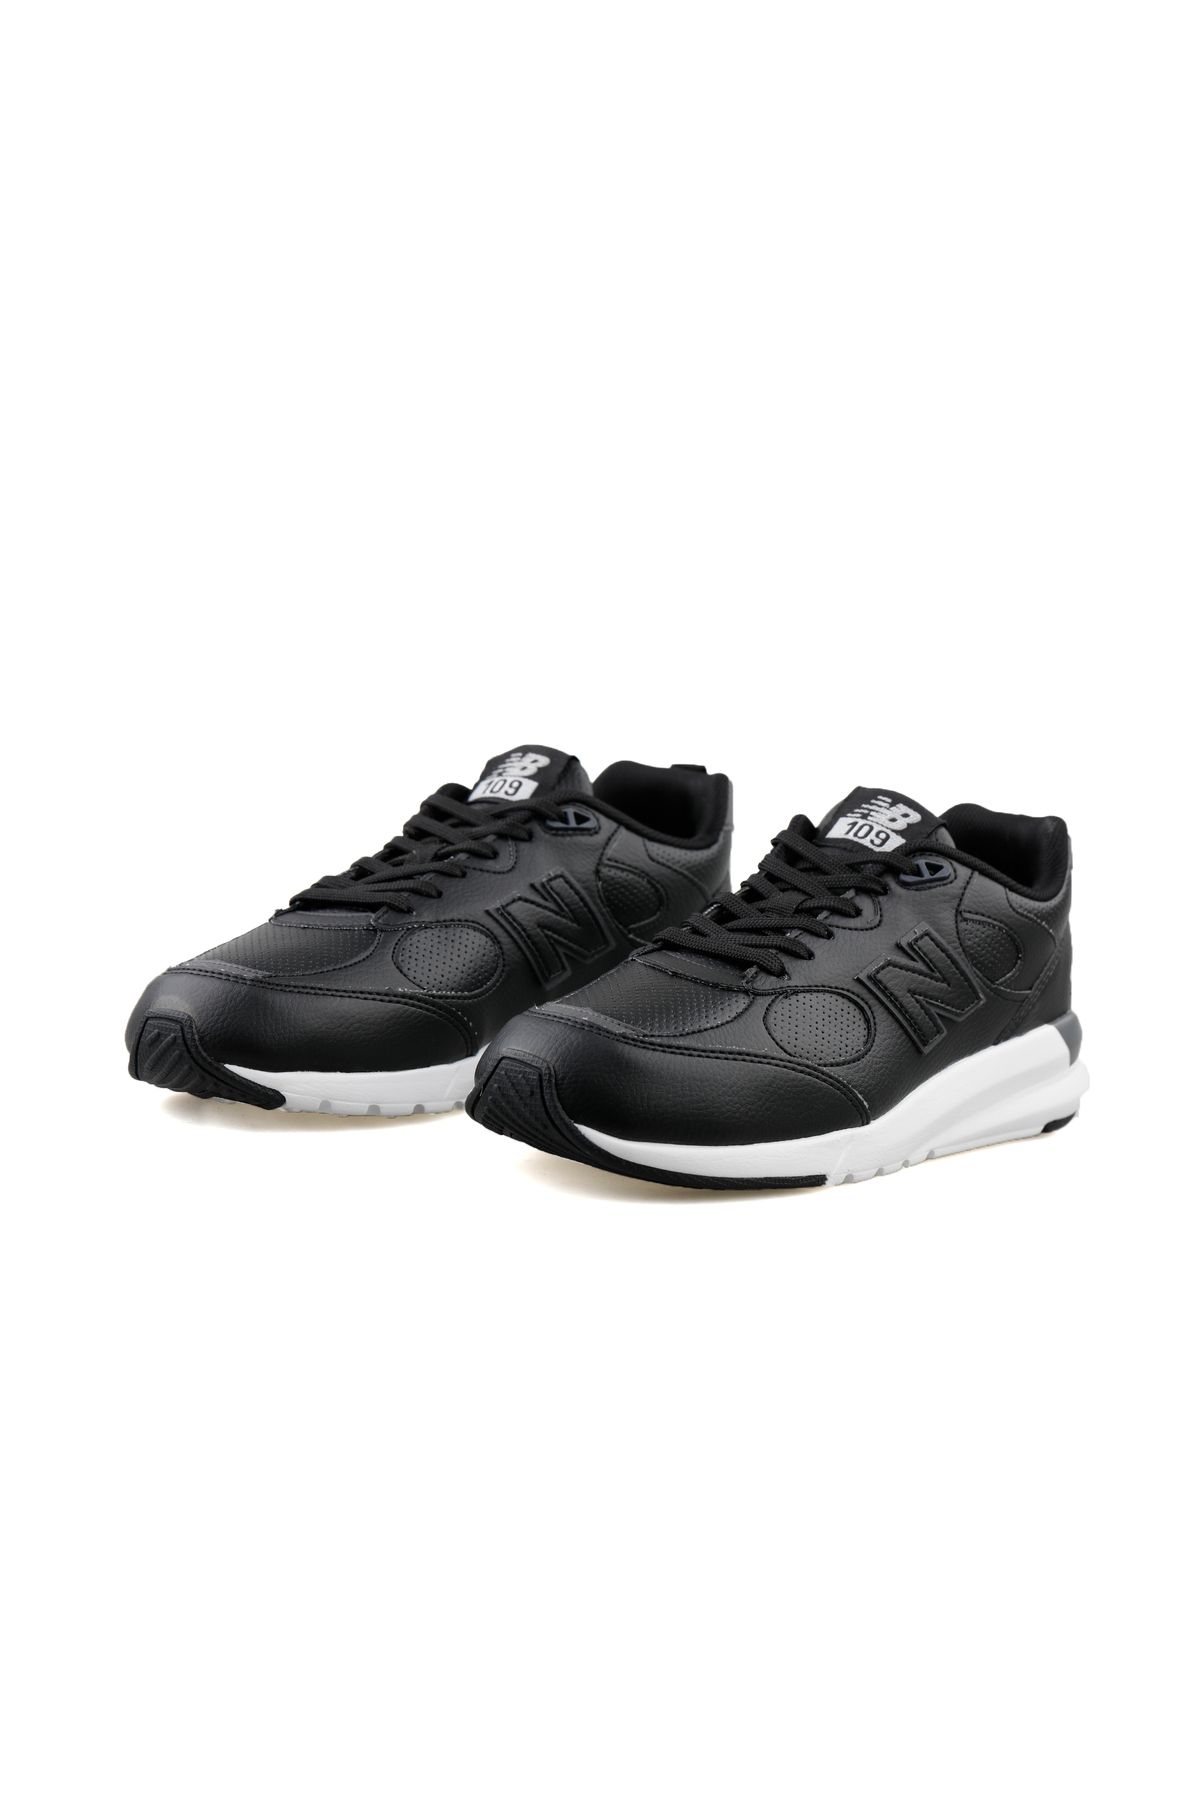 New Balance MS109 Erkek Günlük Ayakkabı Siyah Sneaker